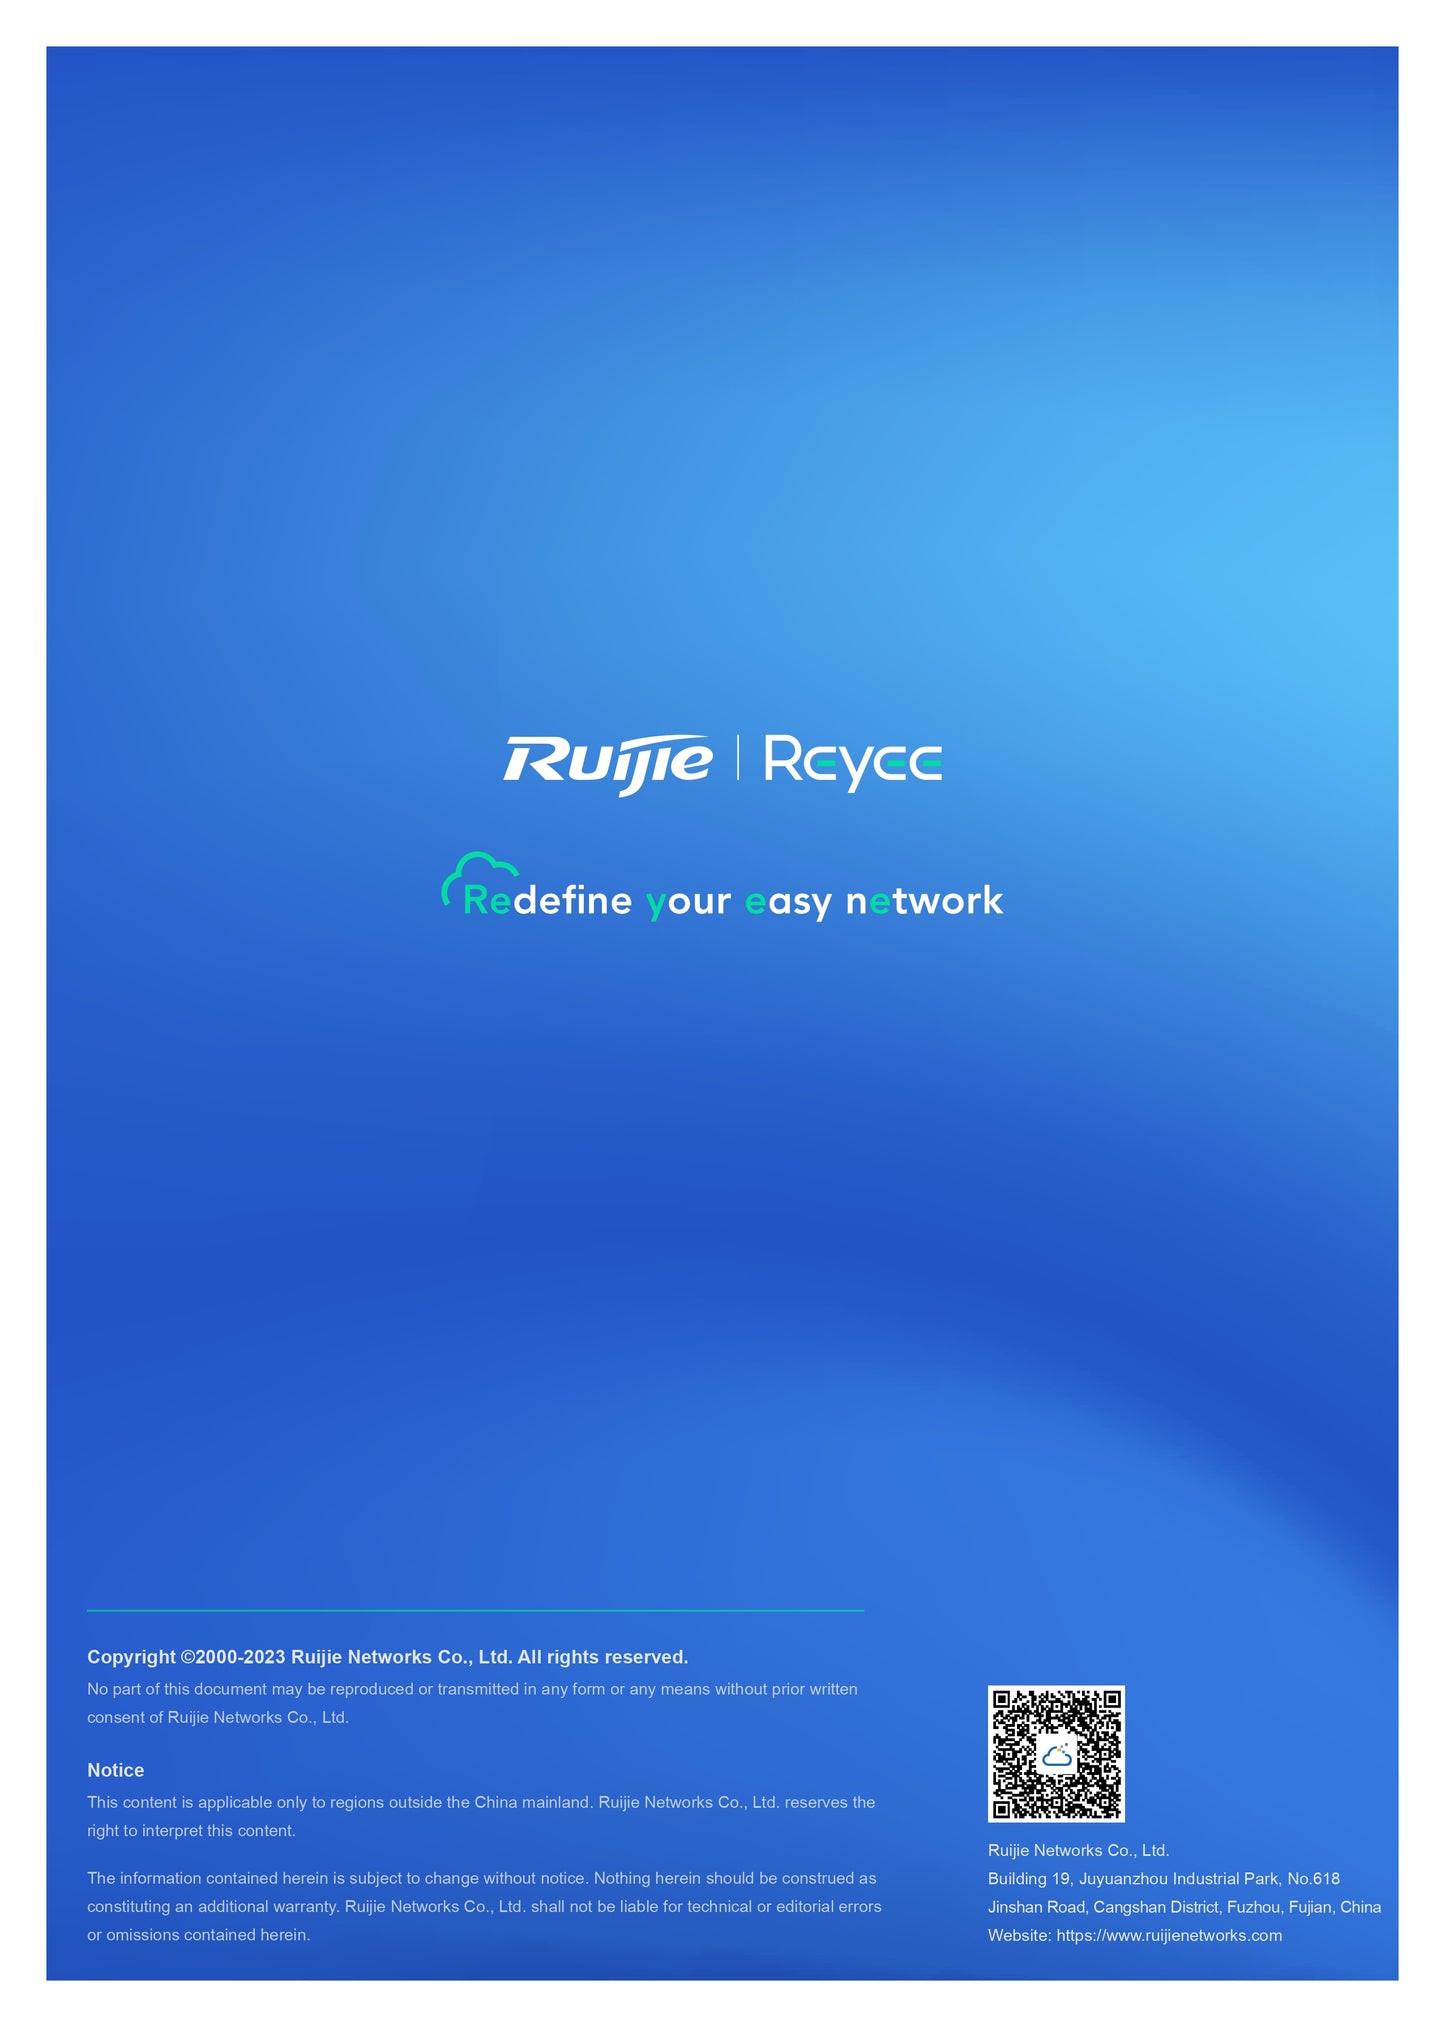 Reyee 2.4GHz 300Mbps 8dBi 70° Pre-Paired Kit | RG-EST100-E